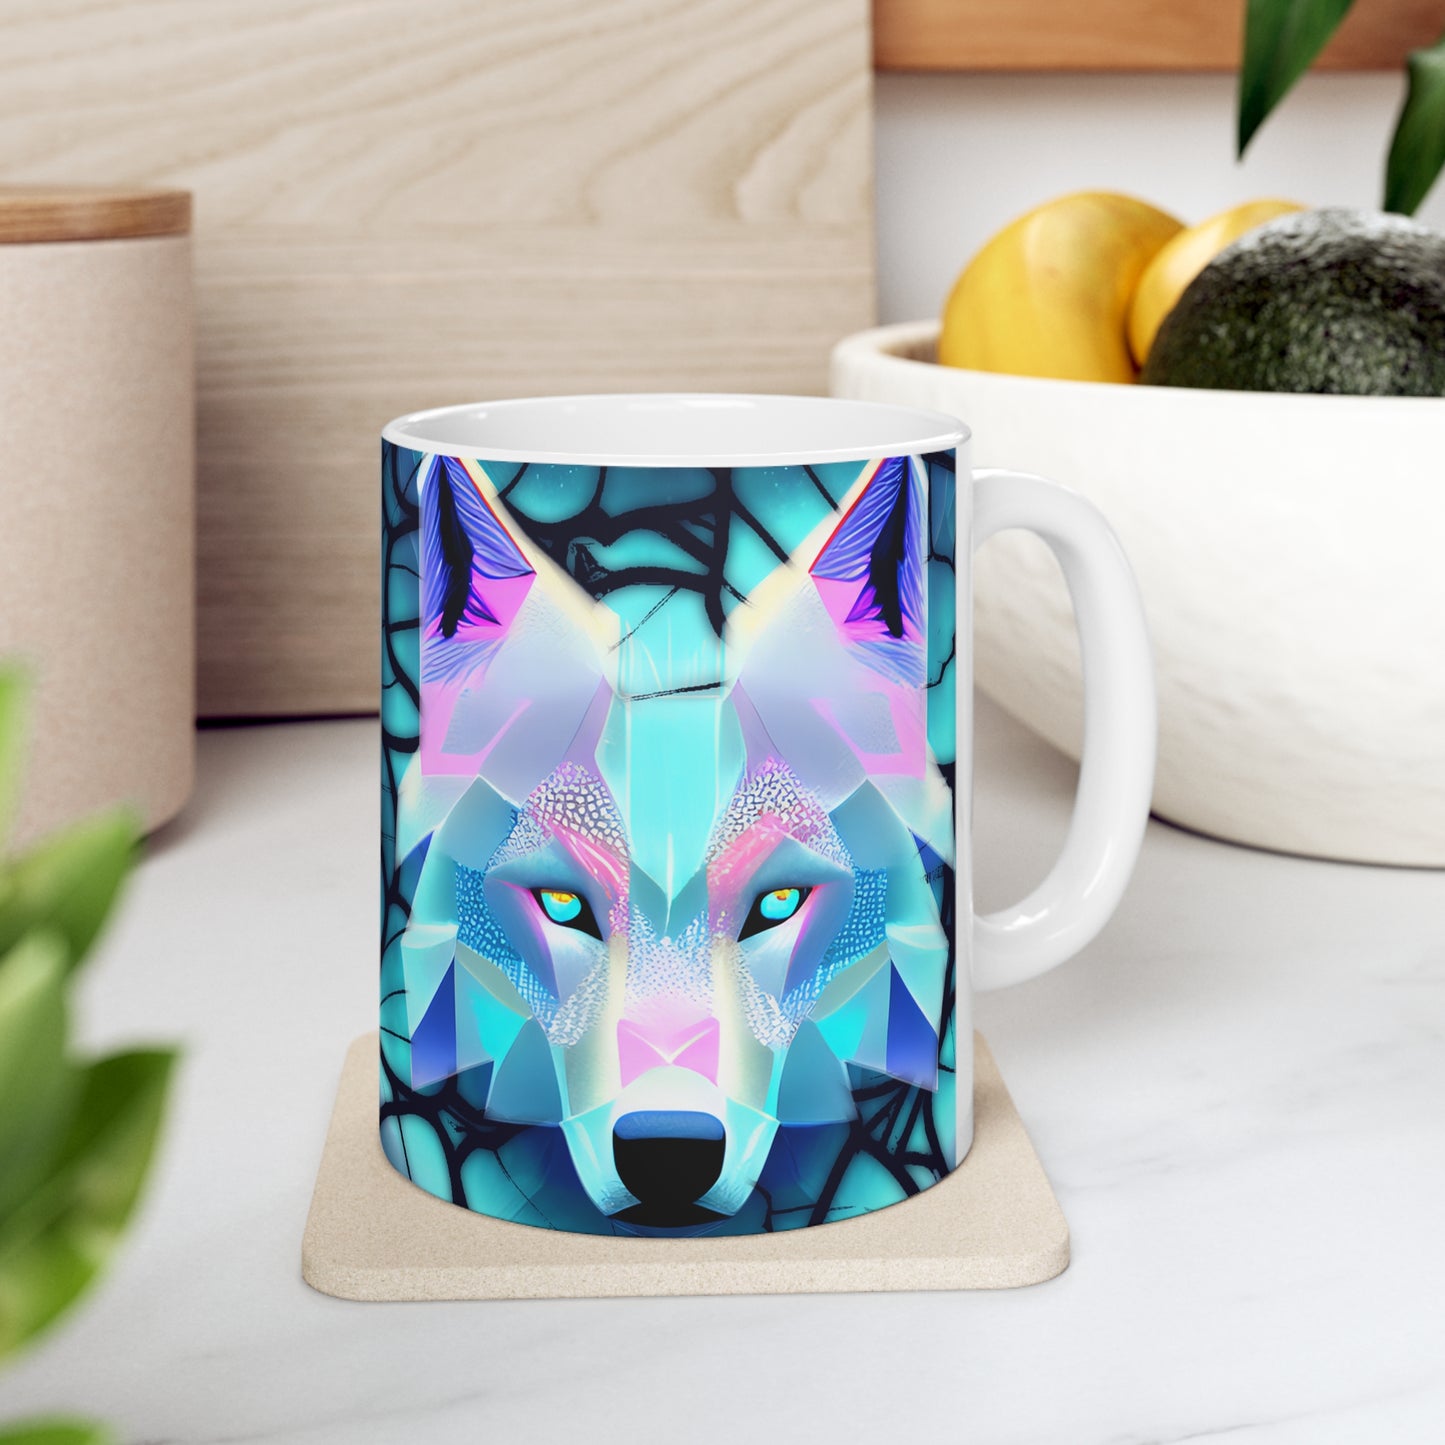 Wolf Ceramic Mug 11oz